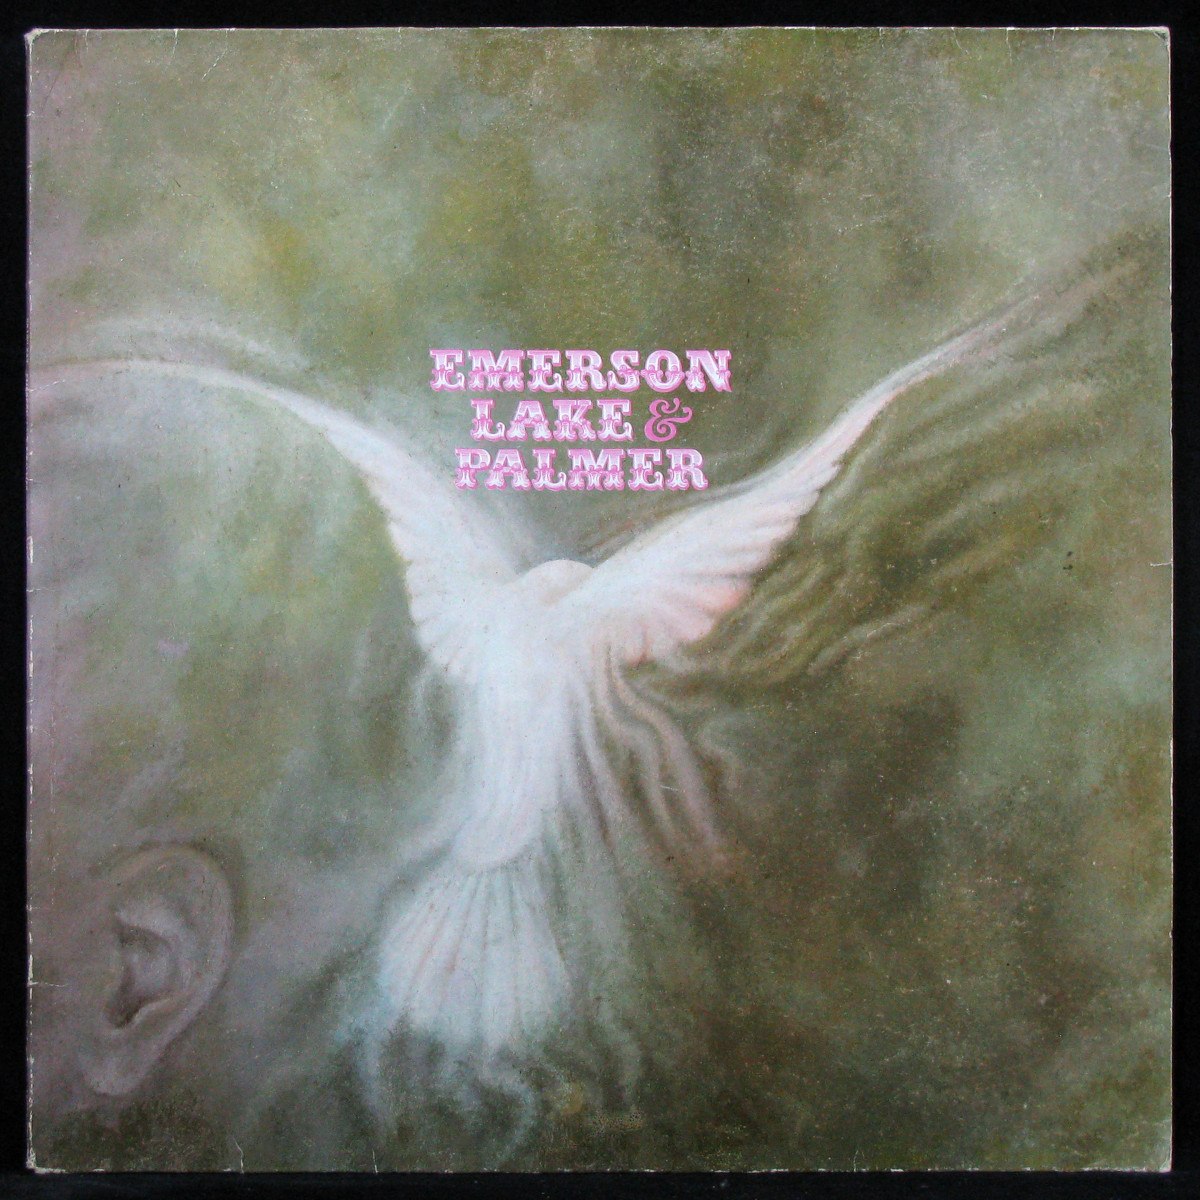 Emerson, Lake & Palmer (1970)